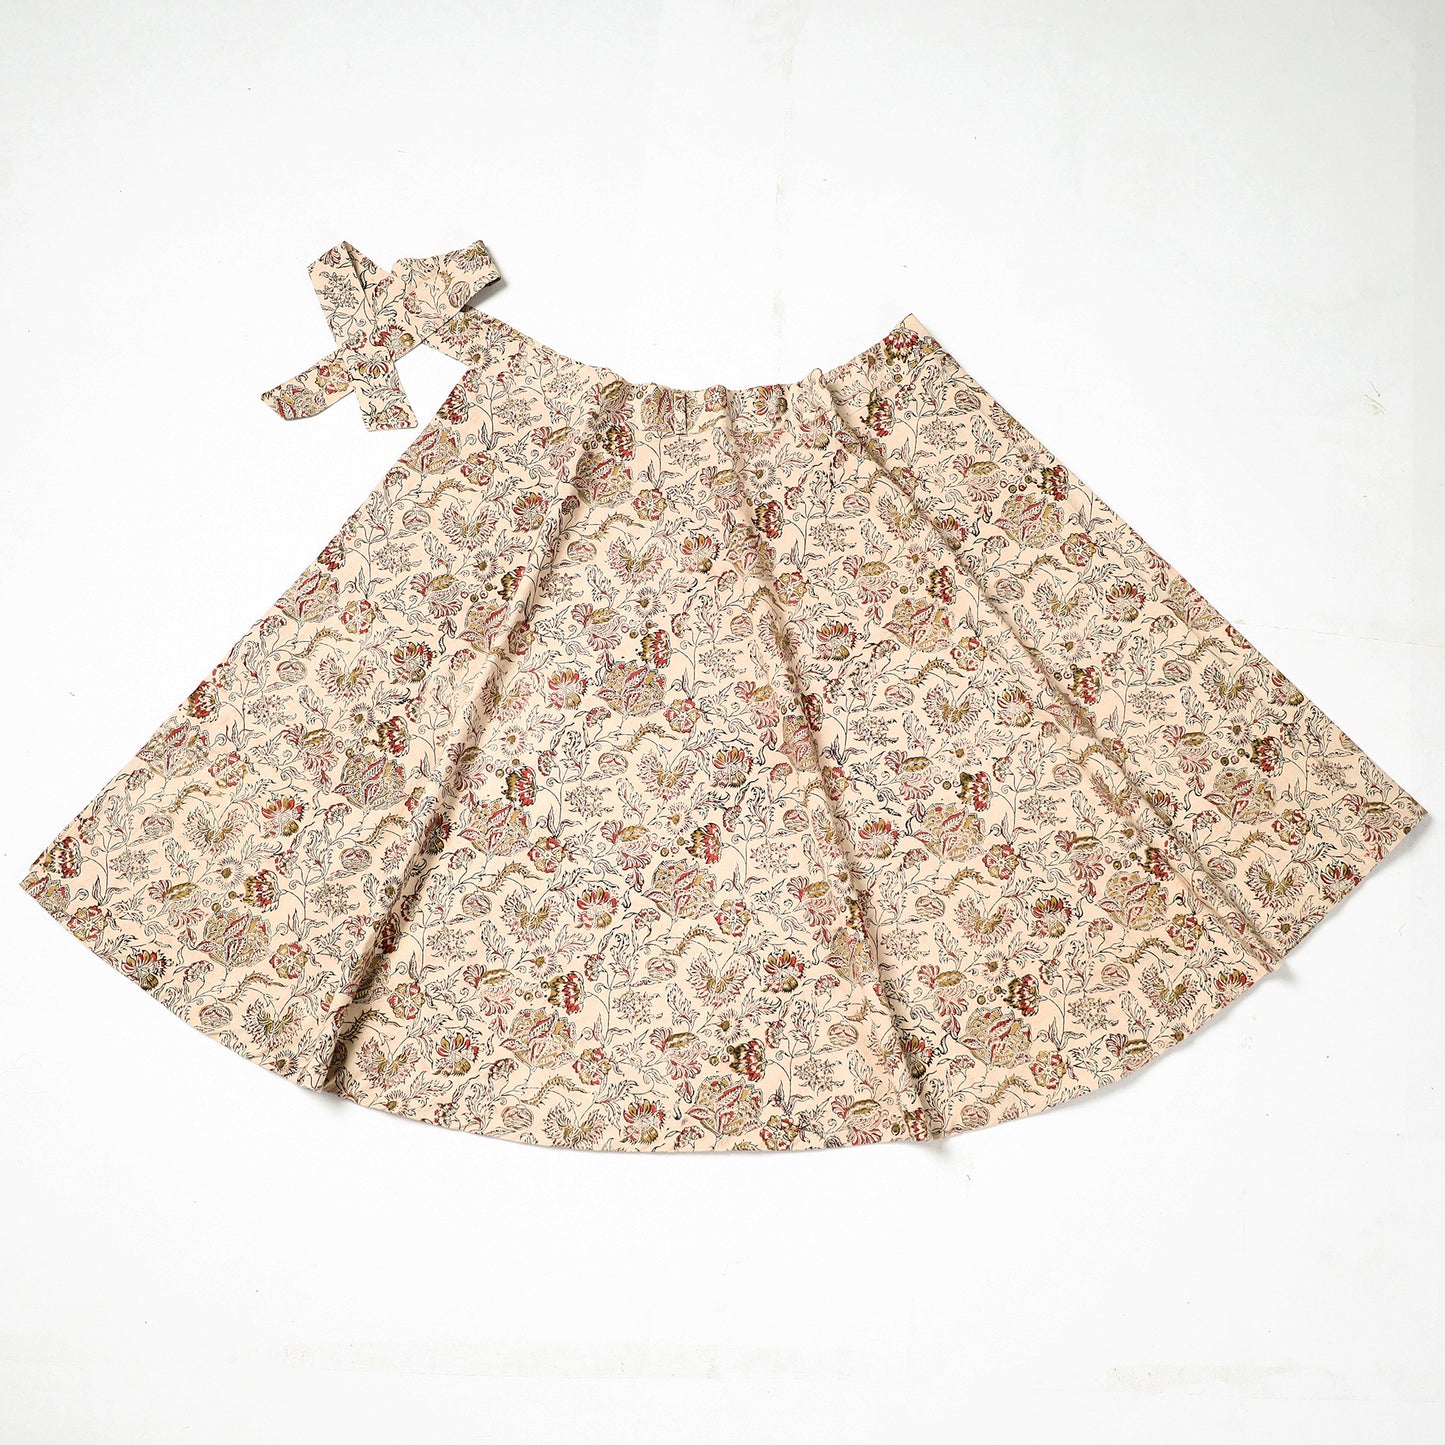  Kalamkari Skirt
